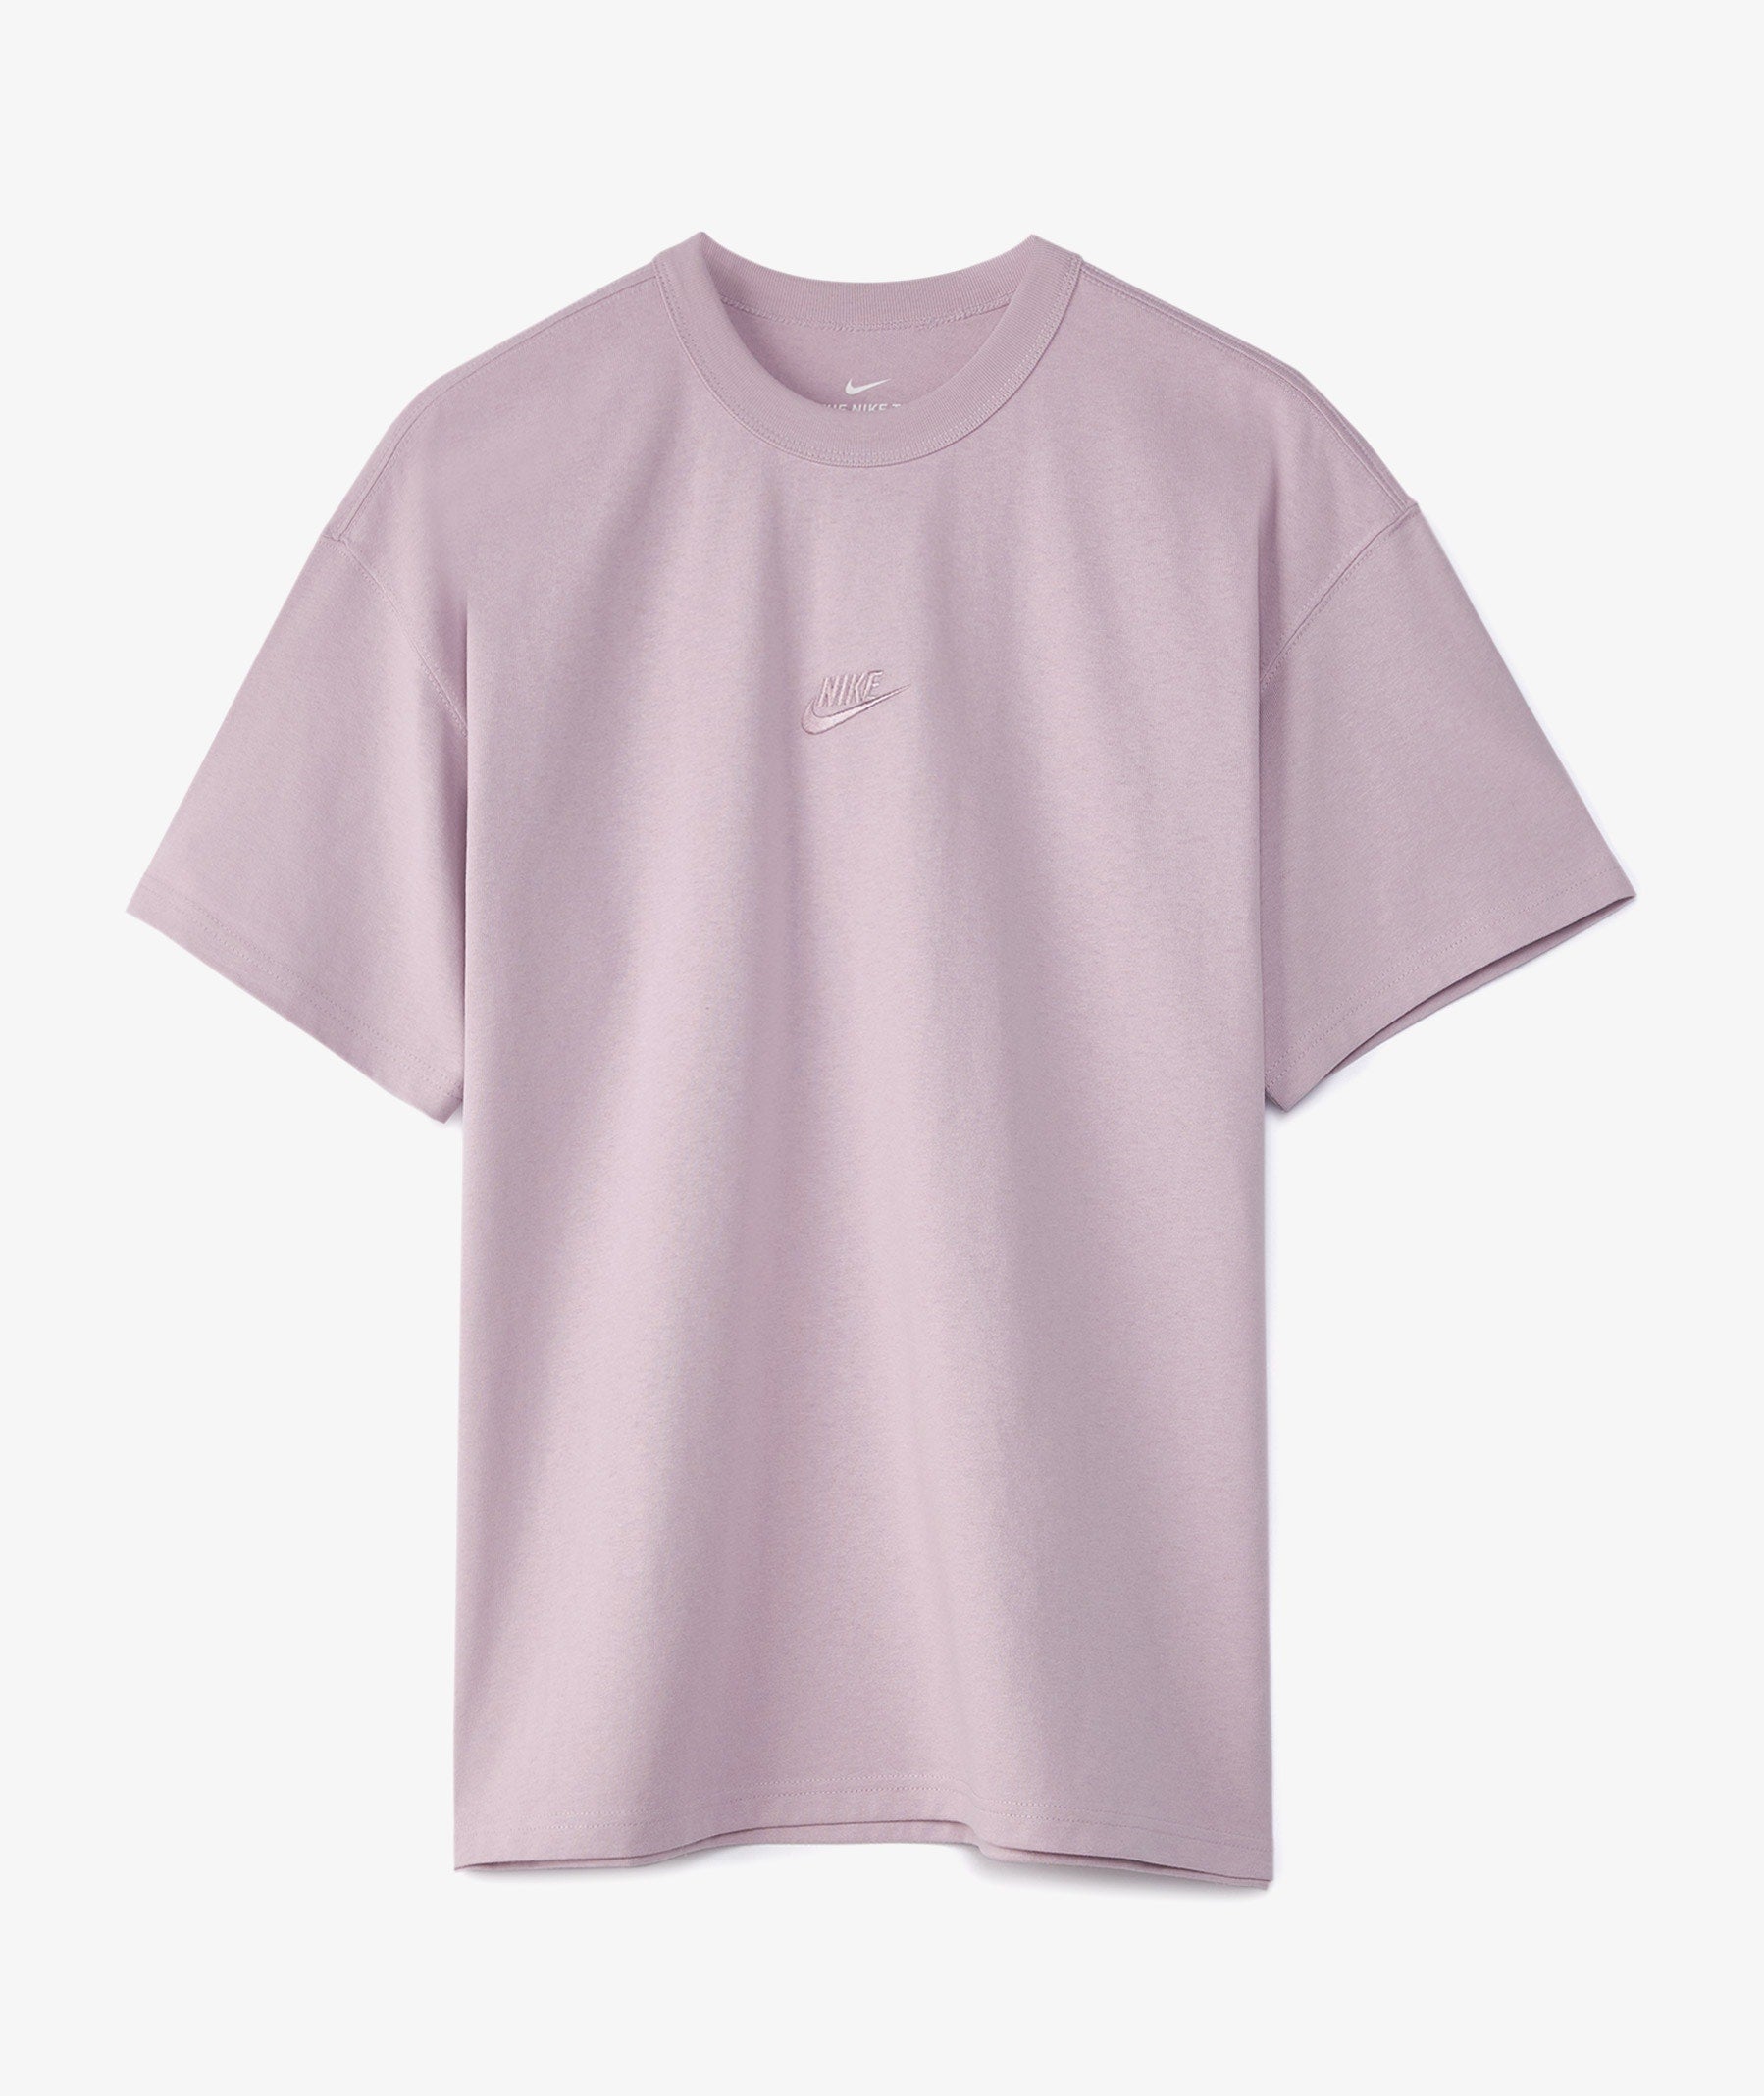 Nike Premium Essential T-Shirt Iced Lilac